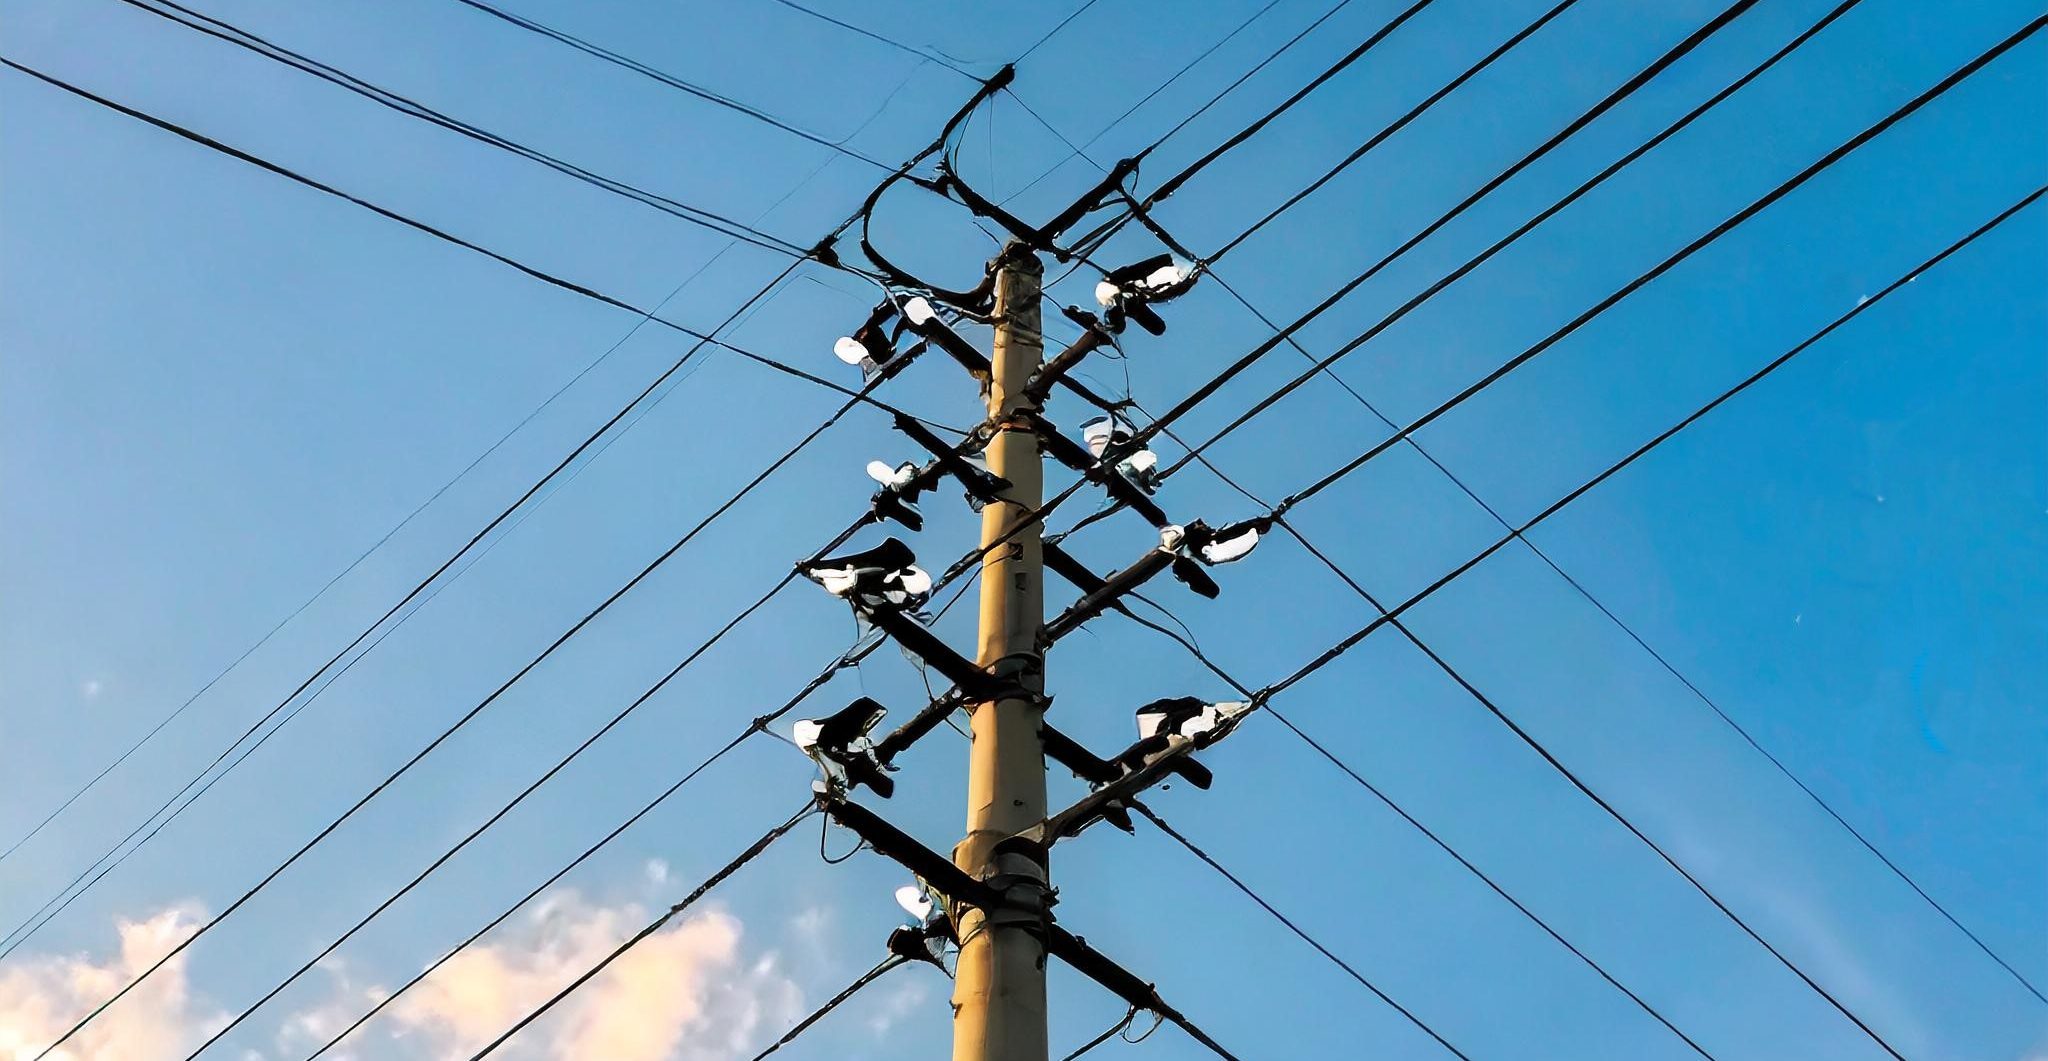 Aufnahme von sich kreuzender Stromleitungen vor blauem Himmel.